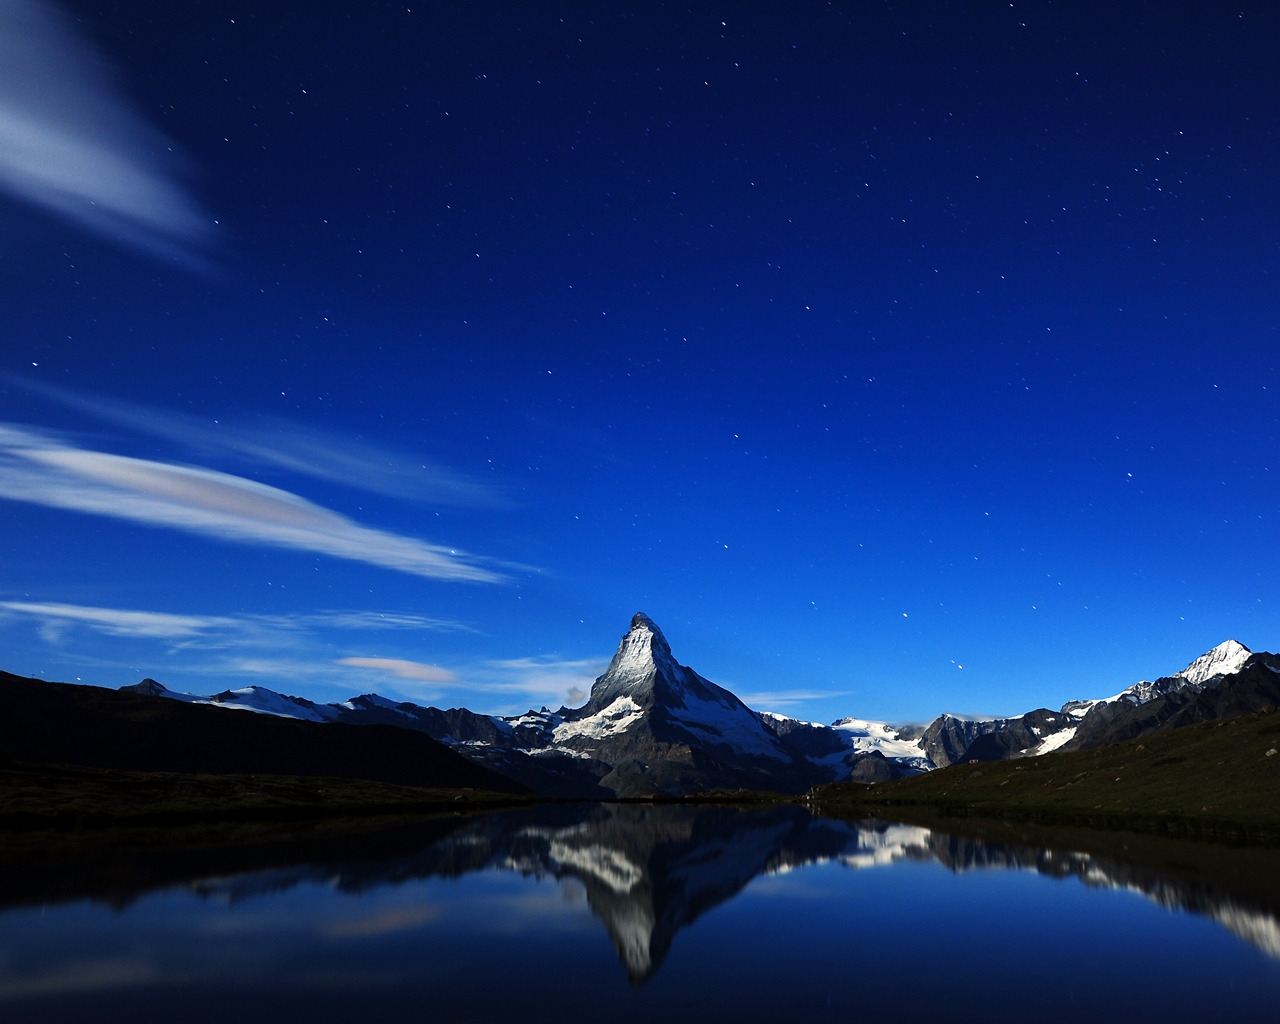 Matterhorn Midnight Reflection for 1280 x 1024 resolution